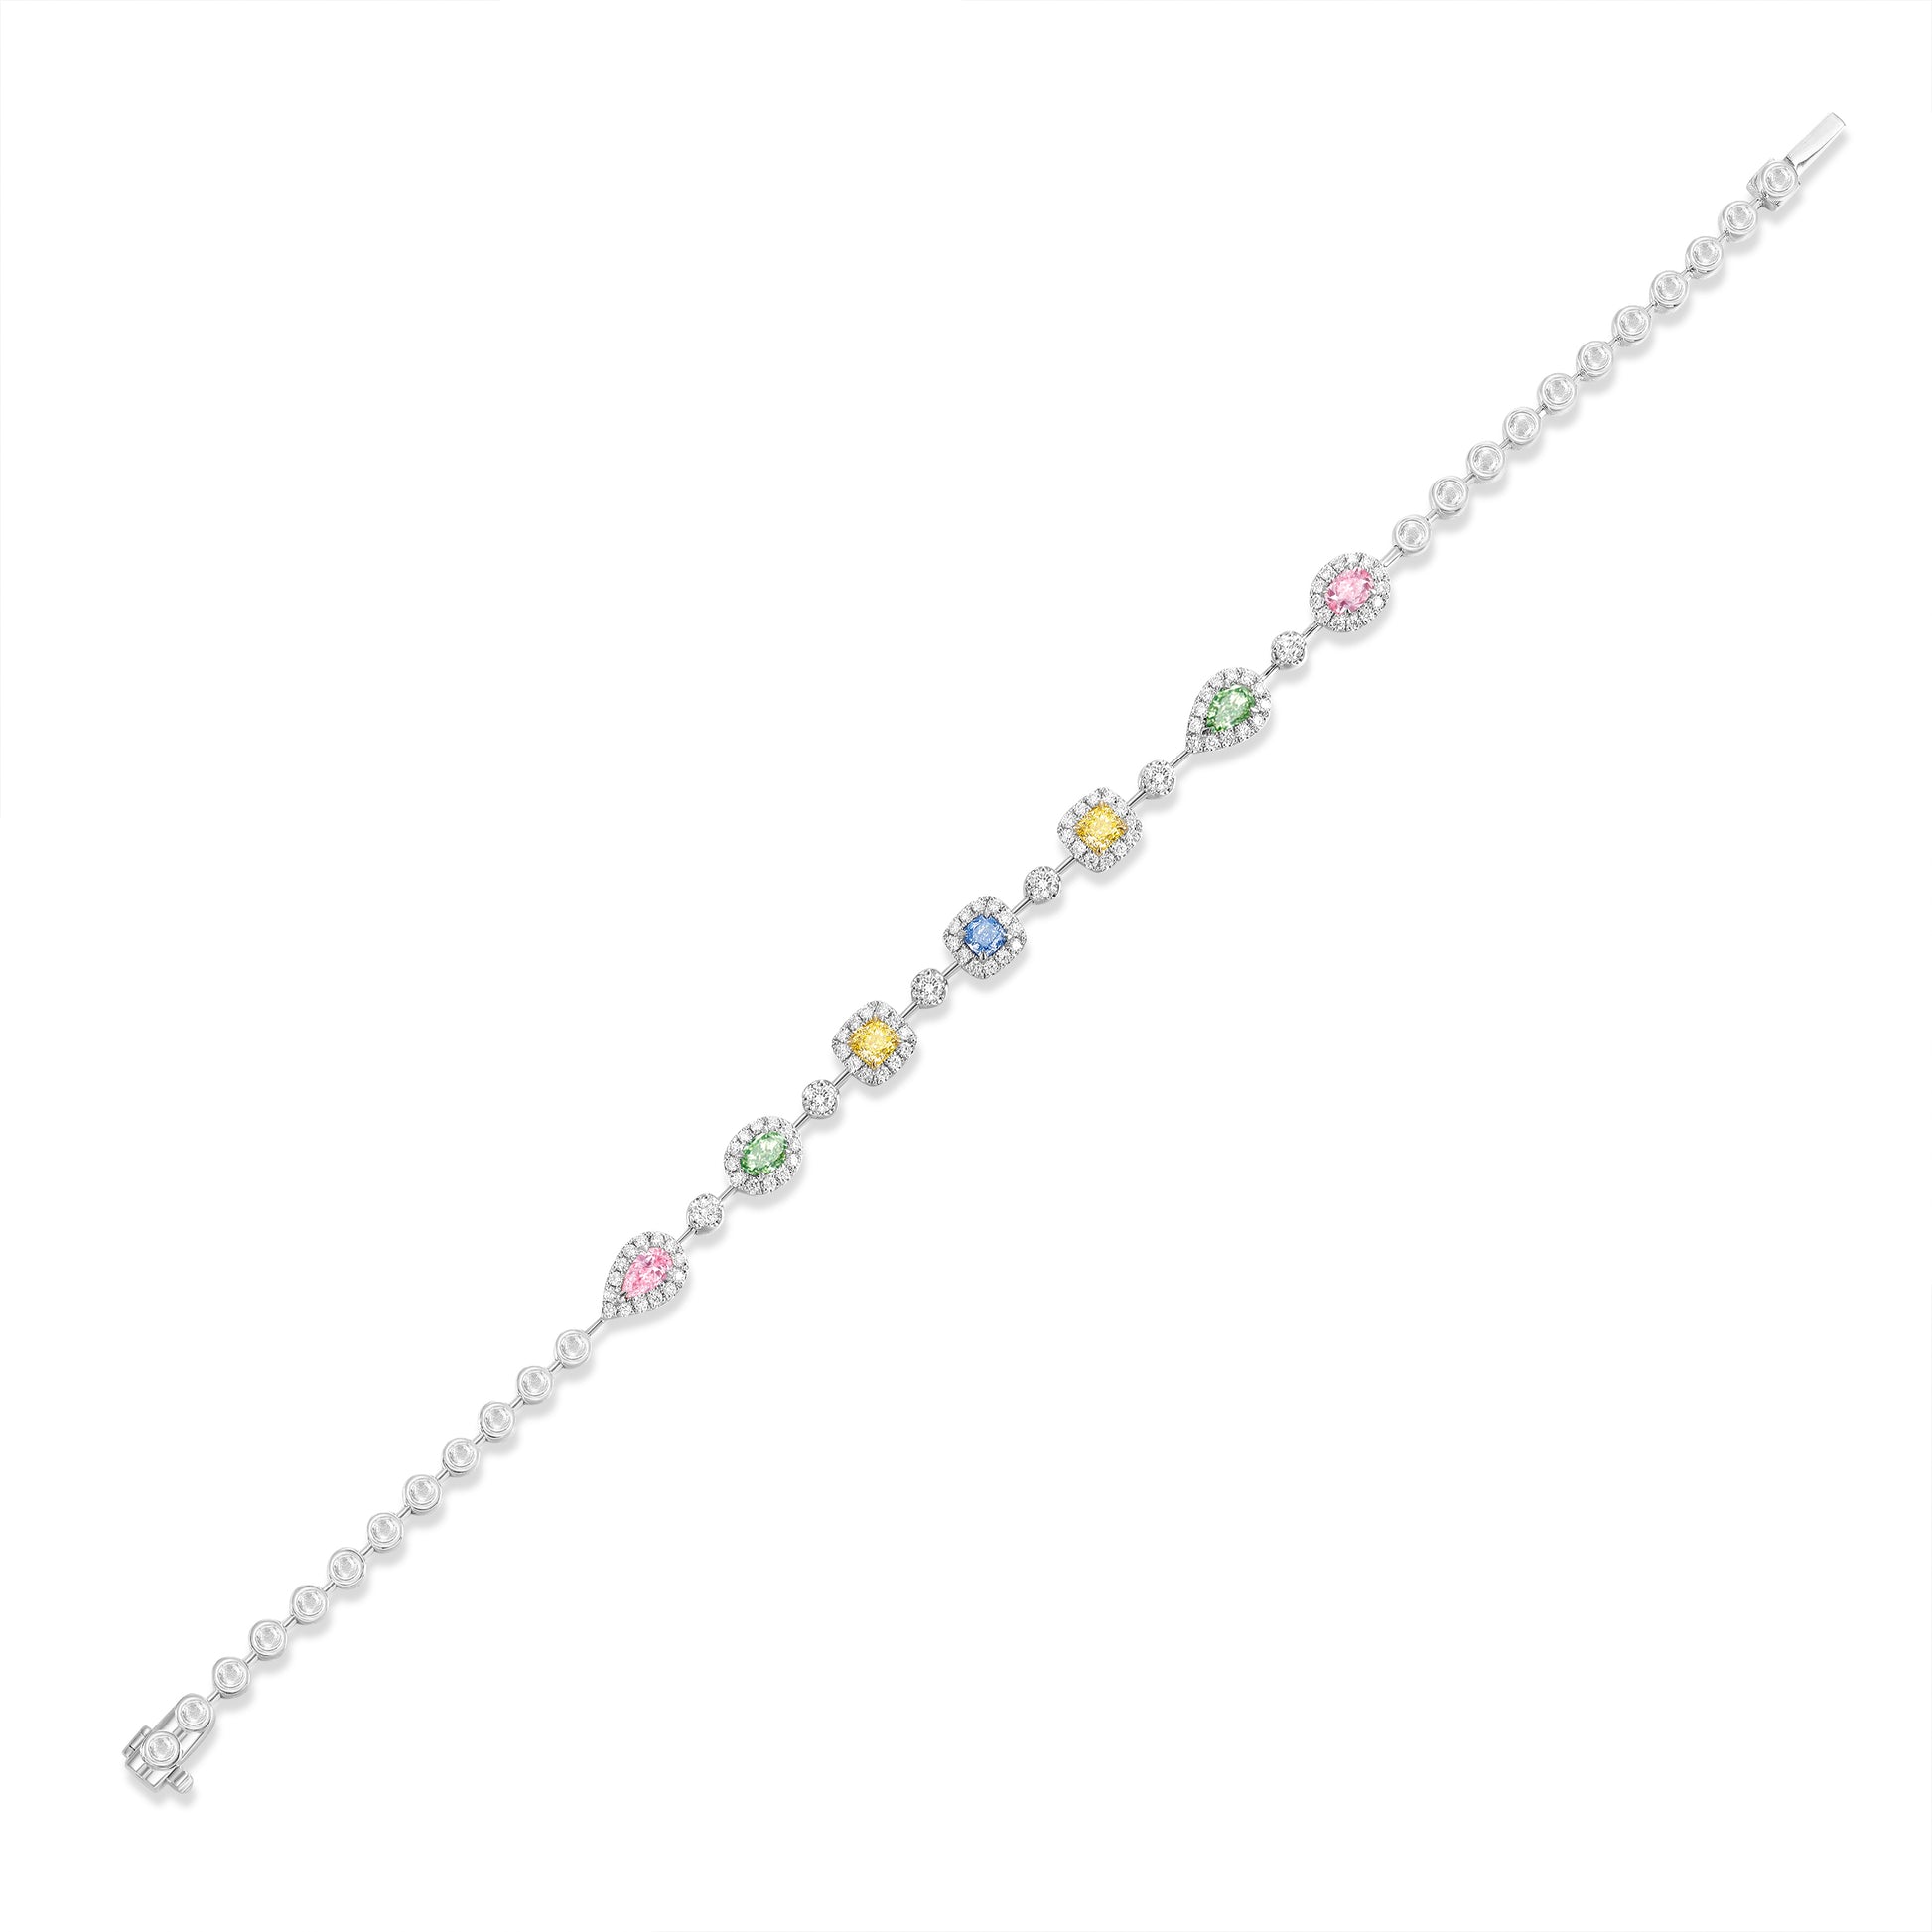 Multi-Colored Diamond Bracelet | Poyas Jewelry